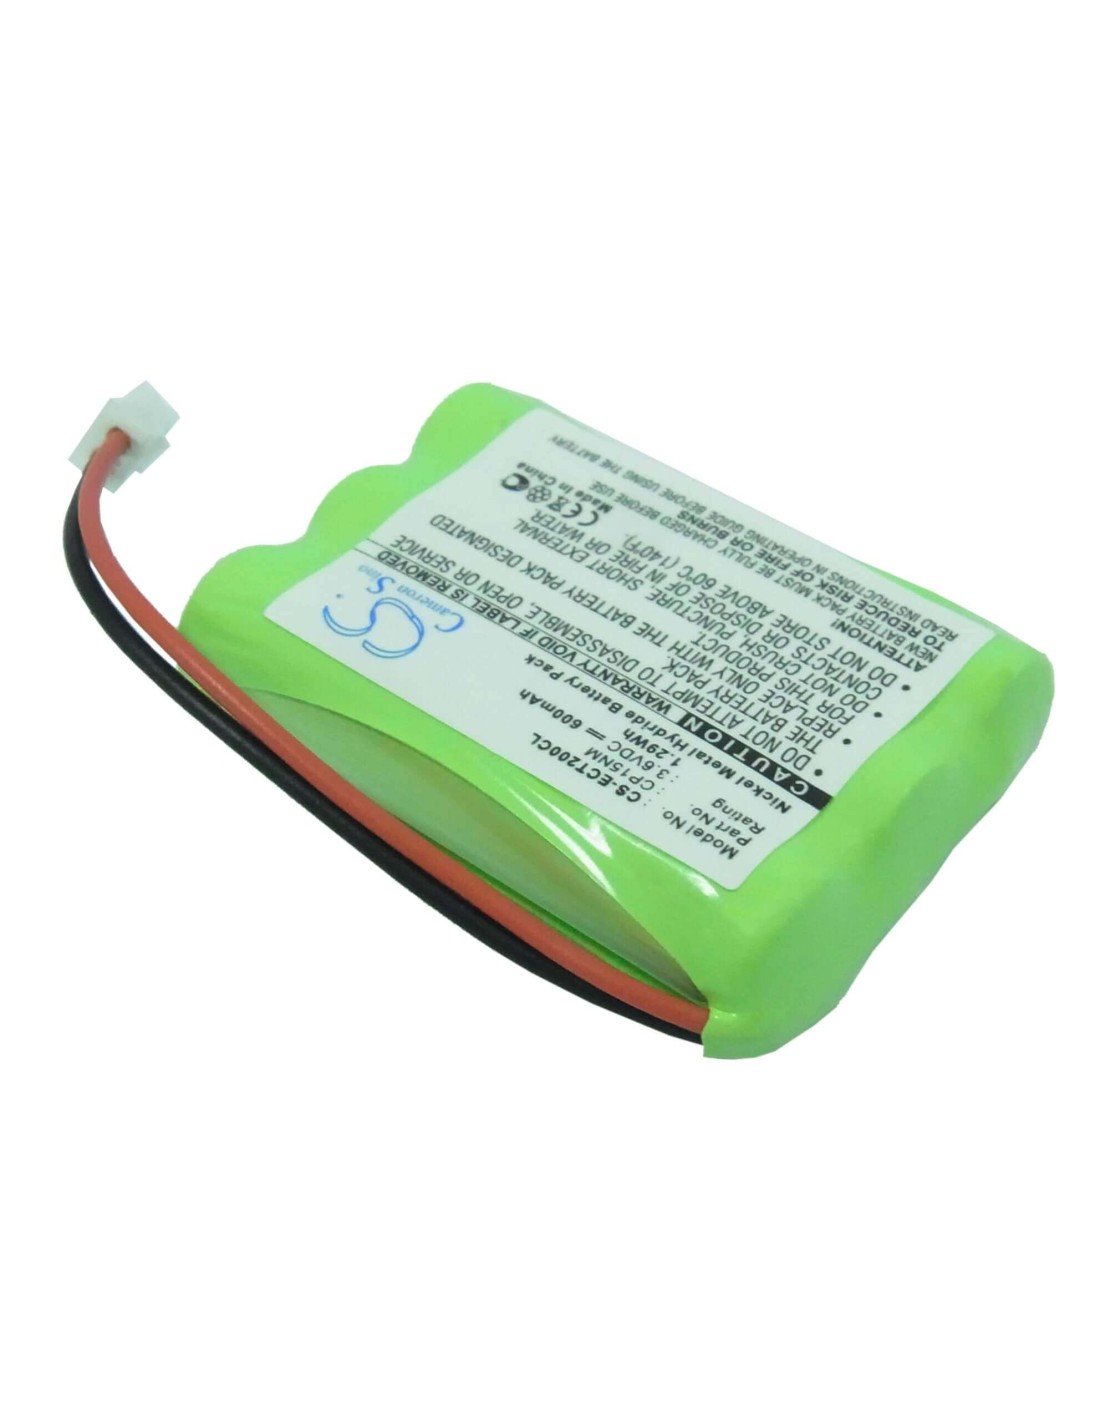 Battery for Teletalk, 7105a 3.6V, 600mAh - 2.16Wh